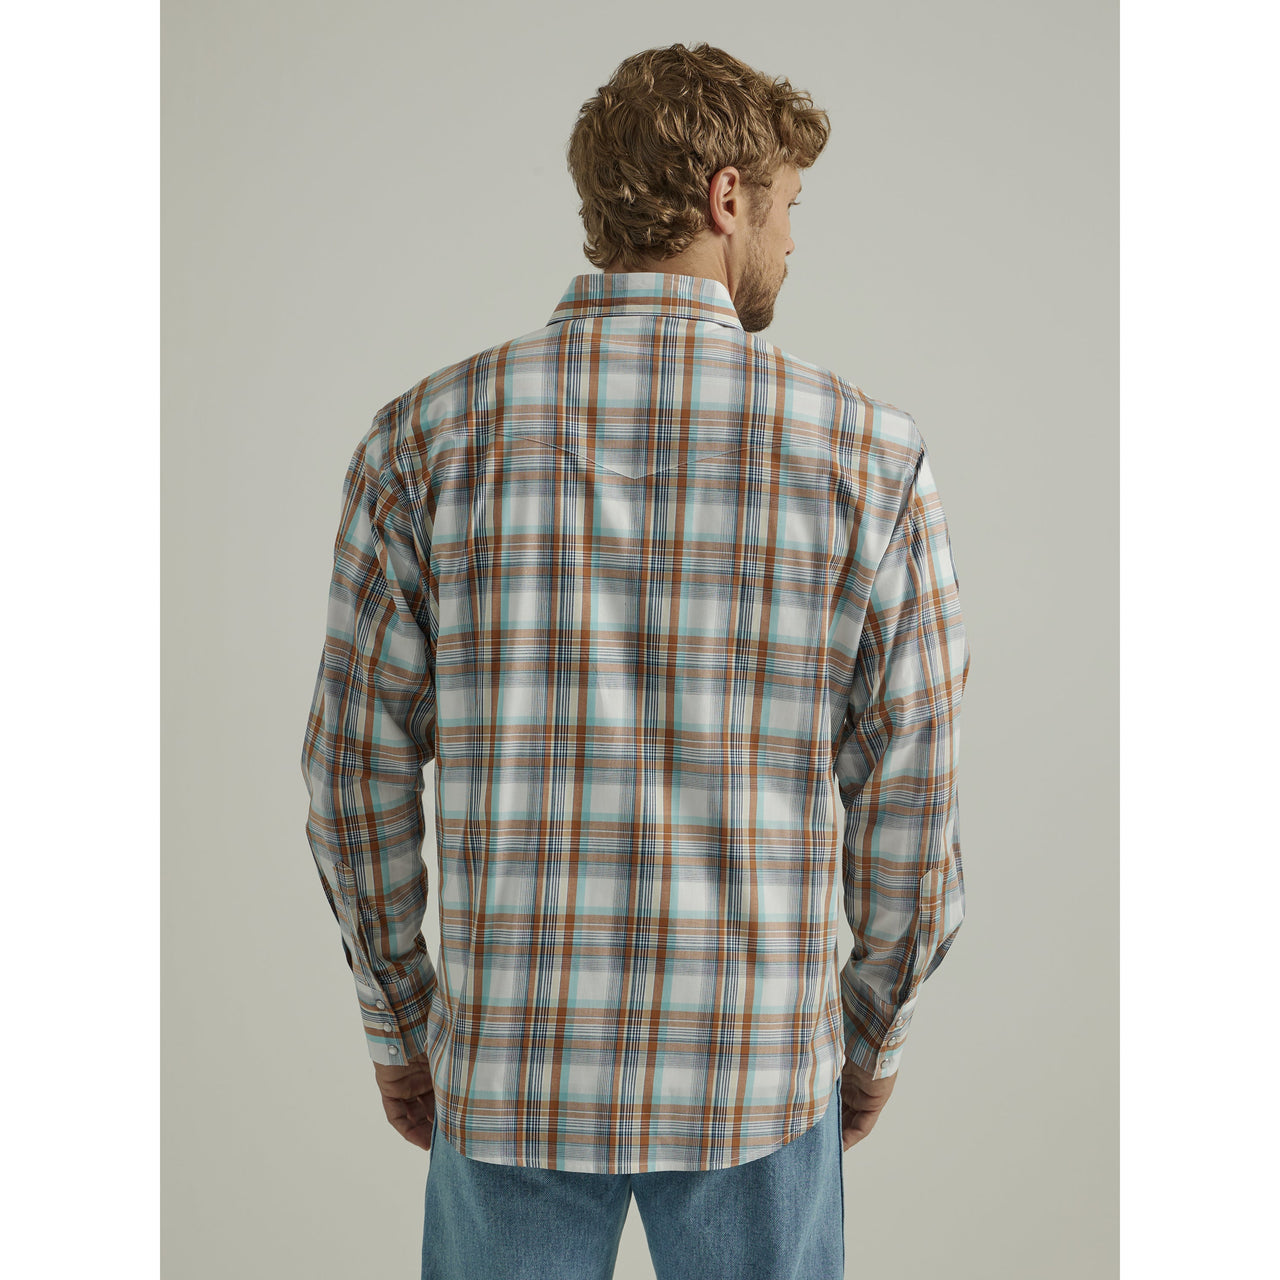 Wrangler Men's Wrinkle Free Long Sleeve Shirt - Brown